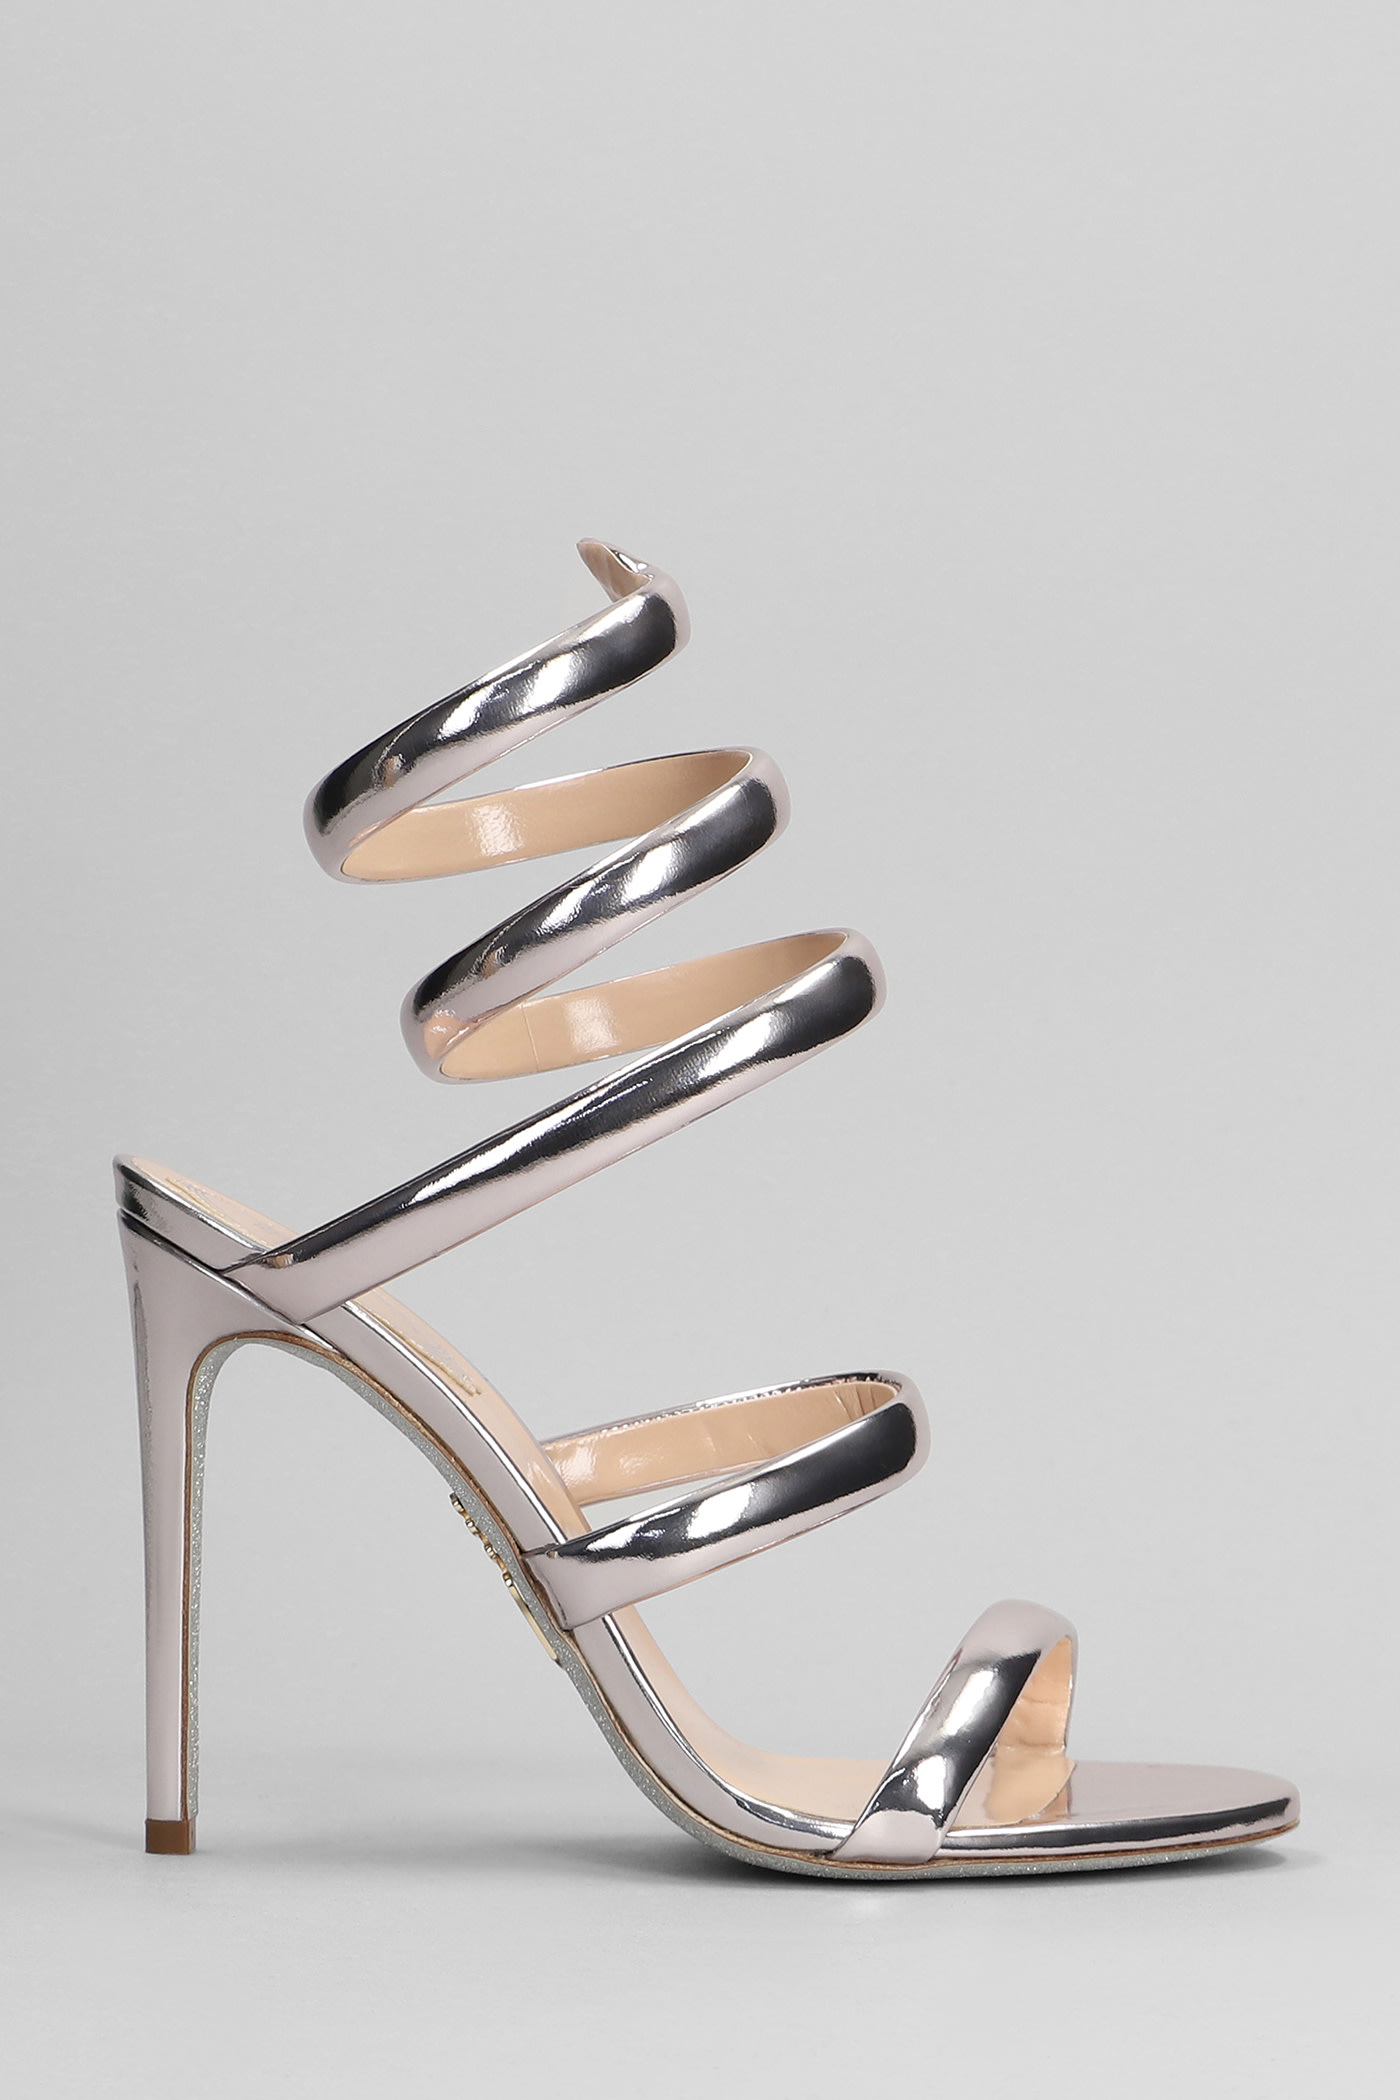 René Caovilla Serpente Sandals In Silver Leather